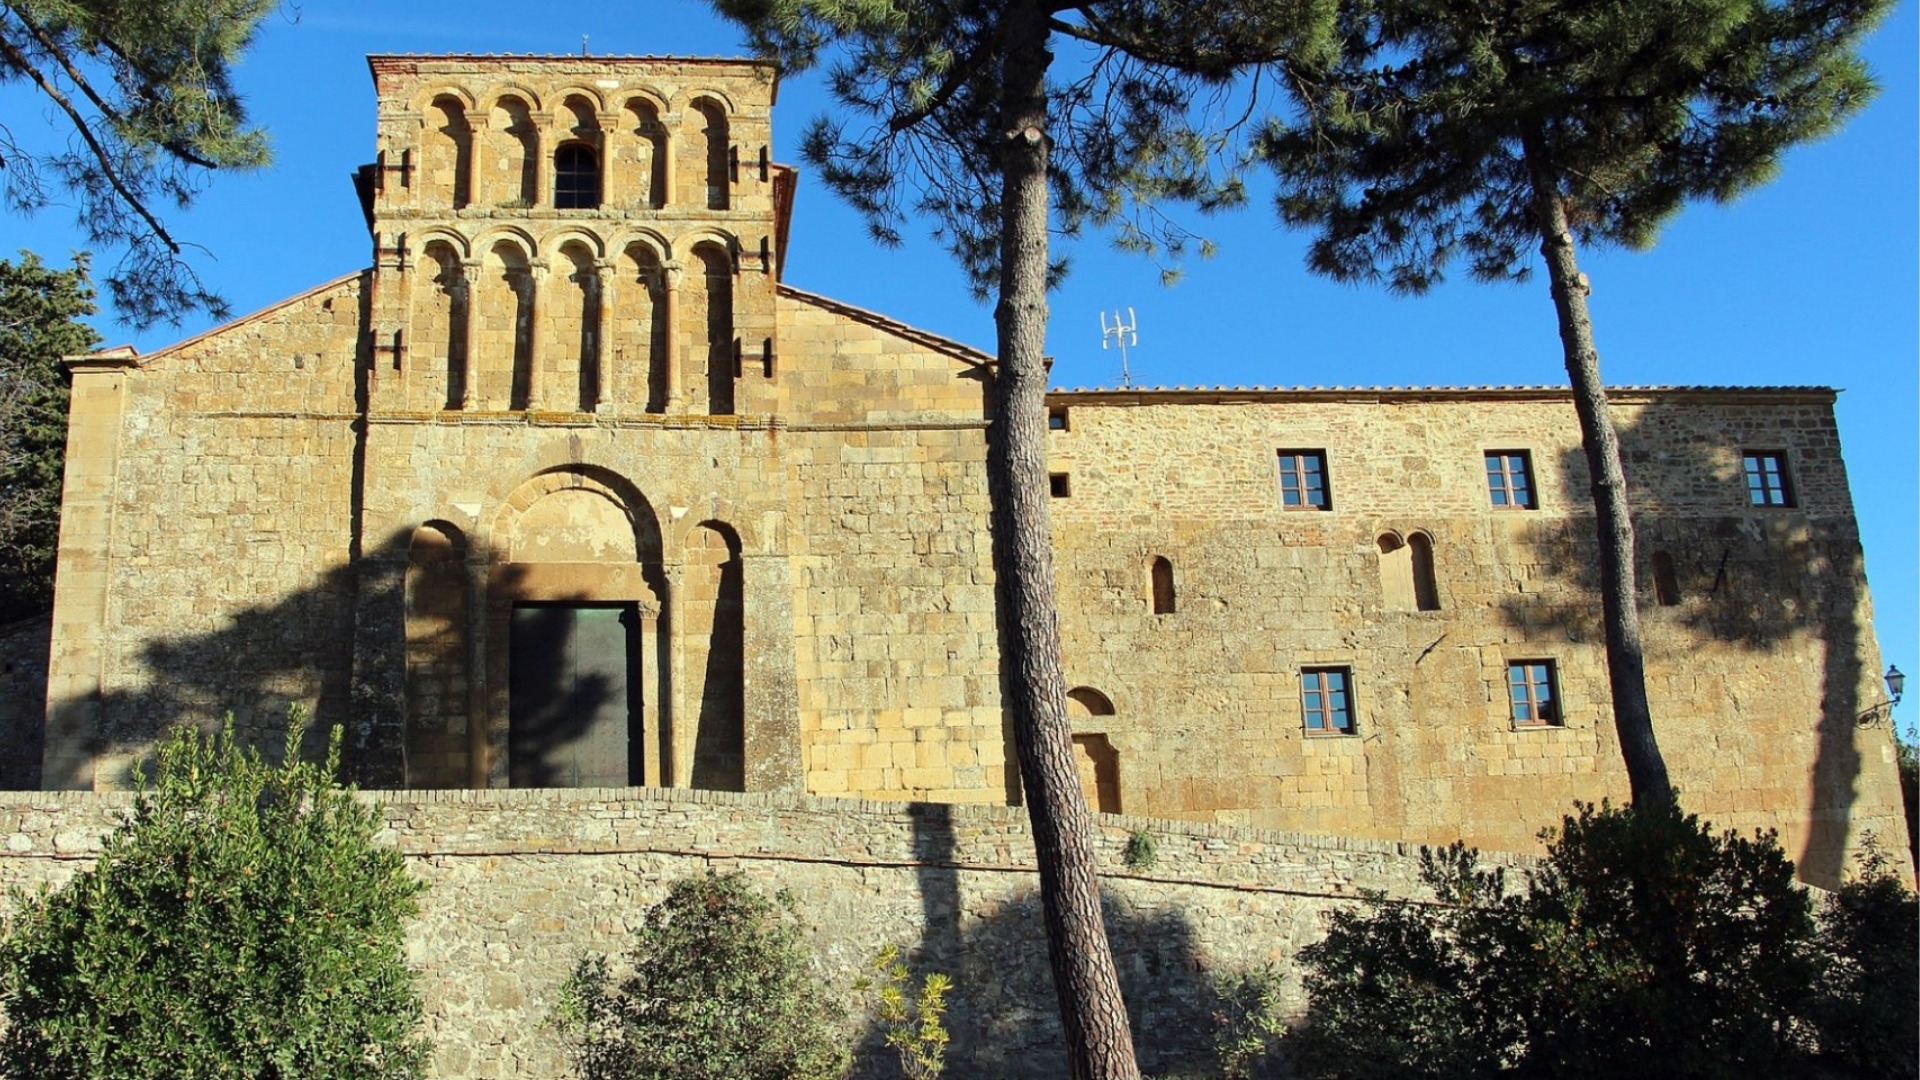 Pieve S. Maria a Chianni in Gambassi Terme